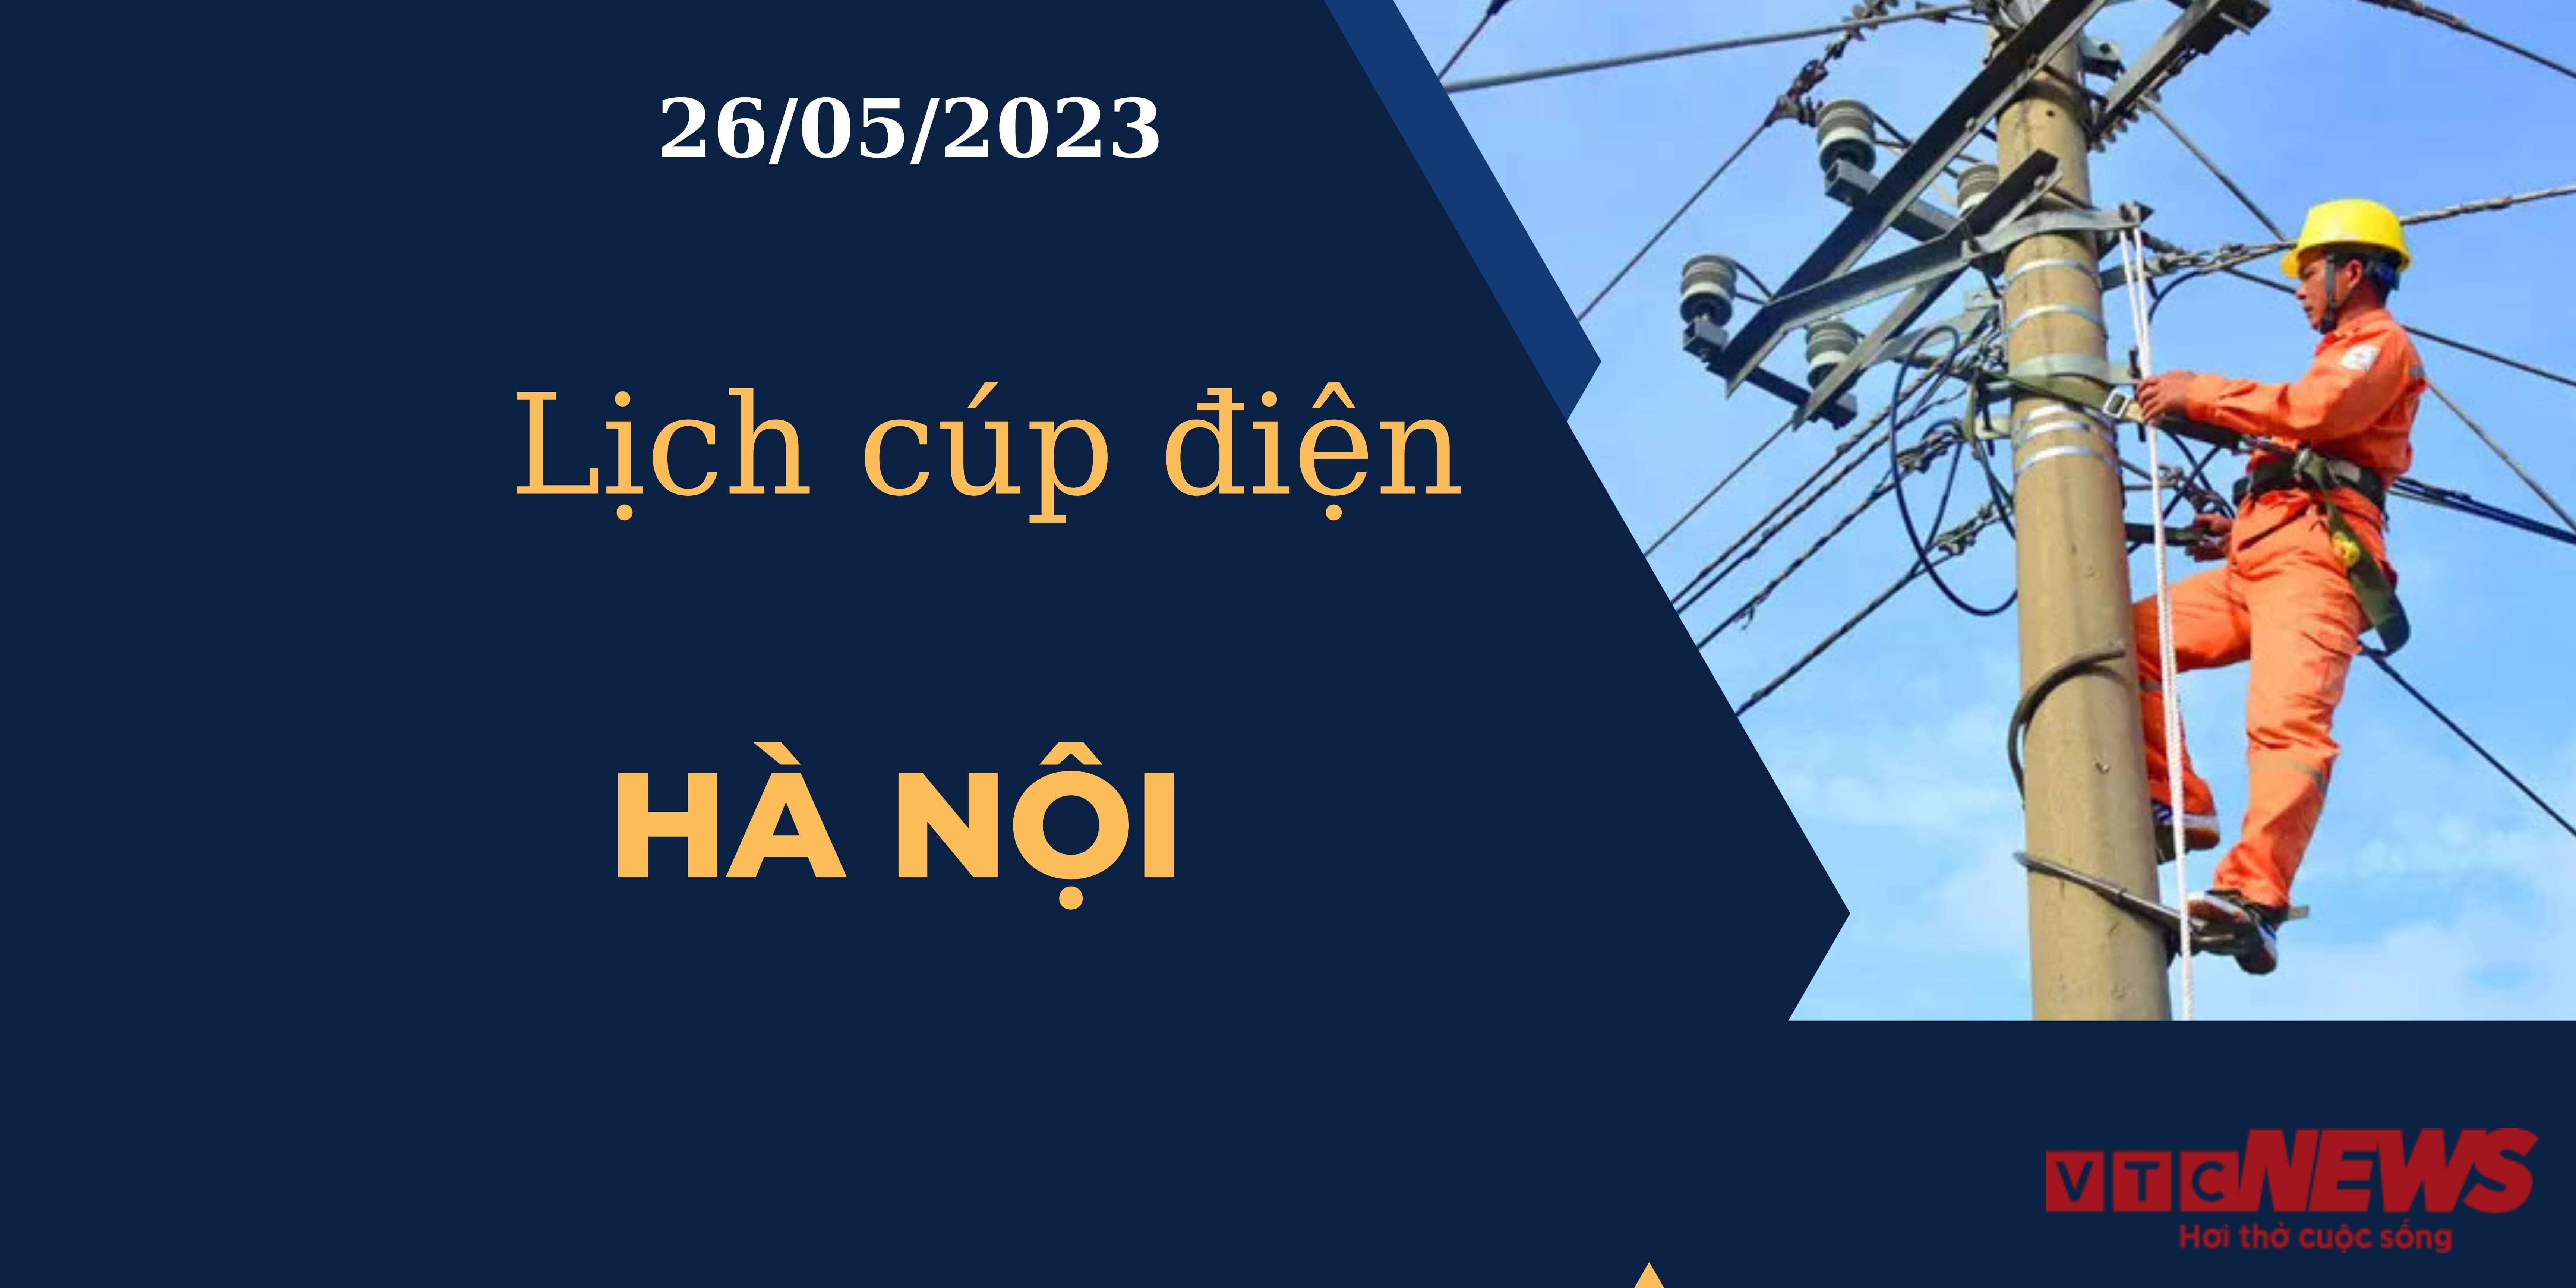 Lịch cúp điện hôm nay tại Hà Nội ngày 26/05/2023 - 1